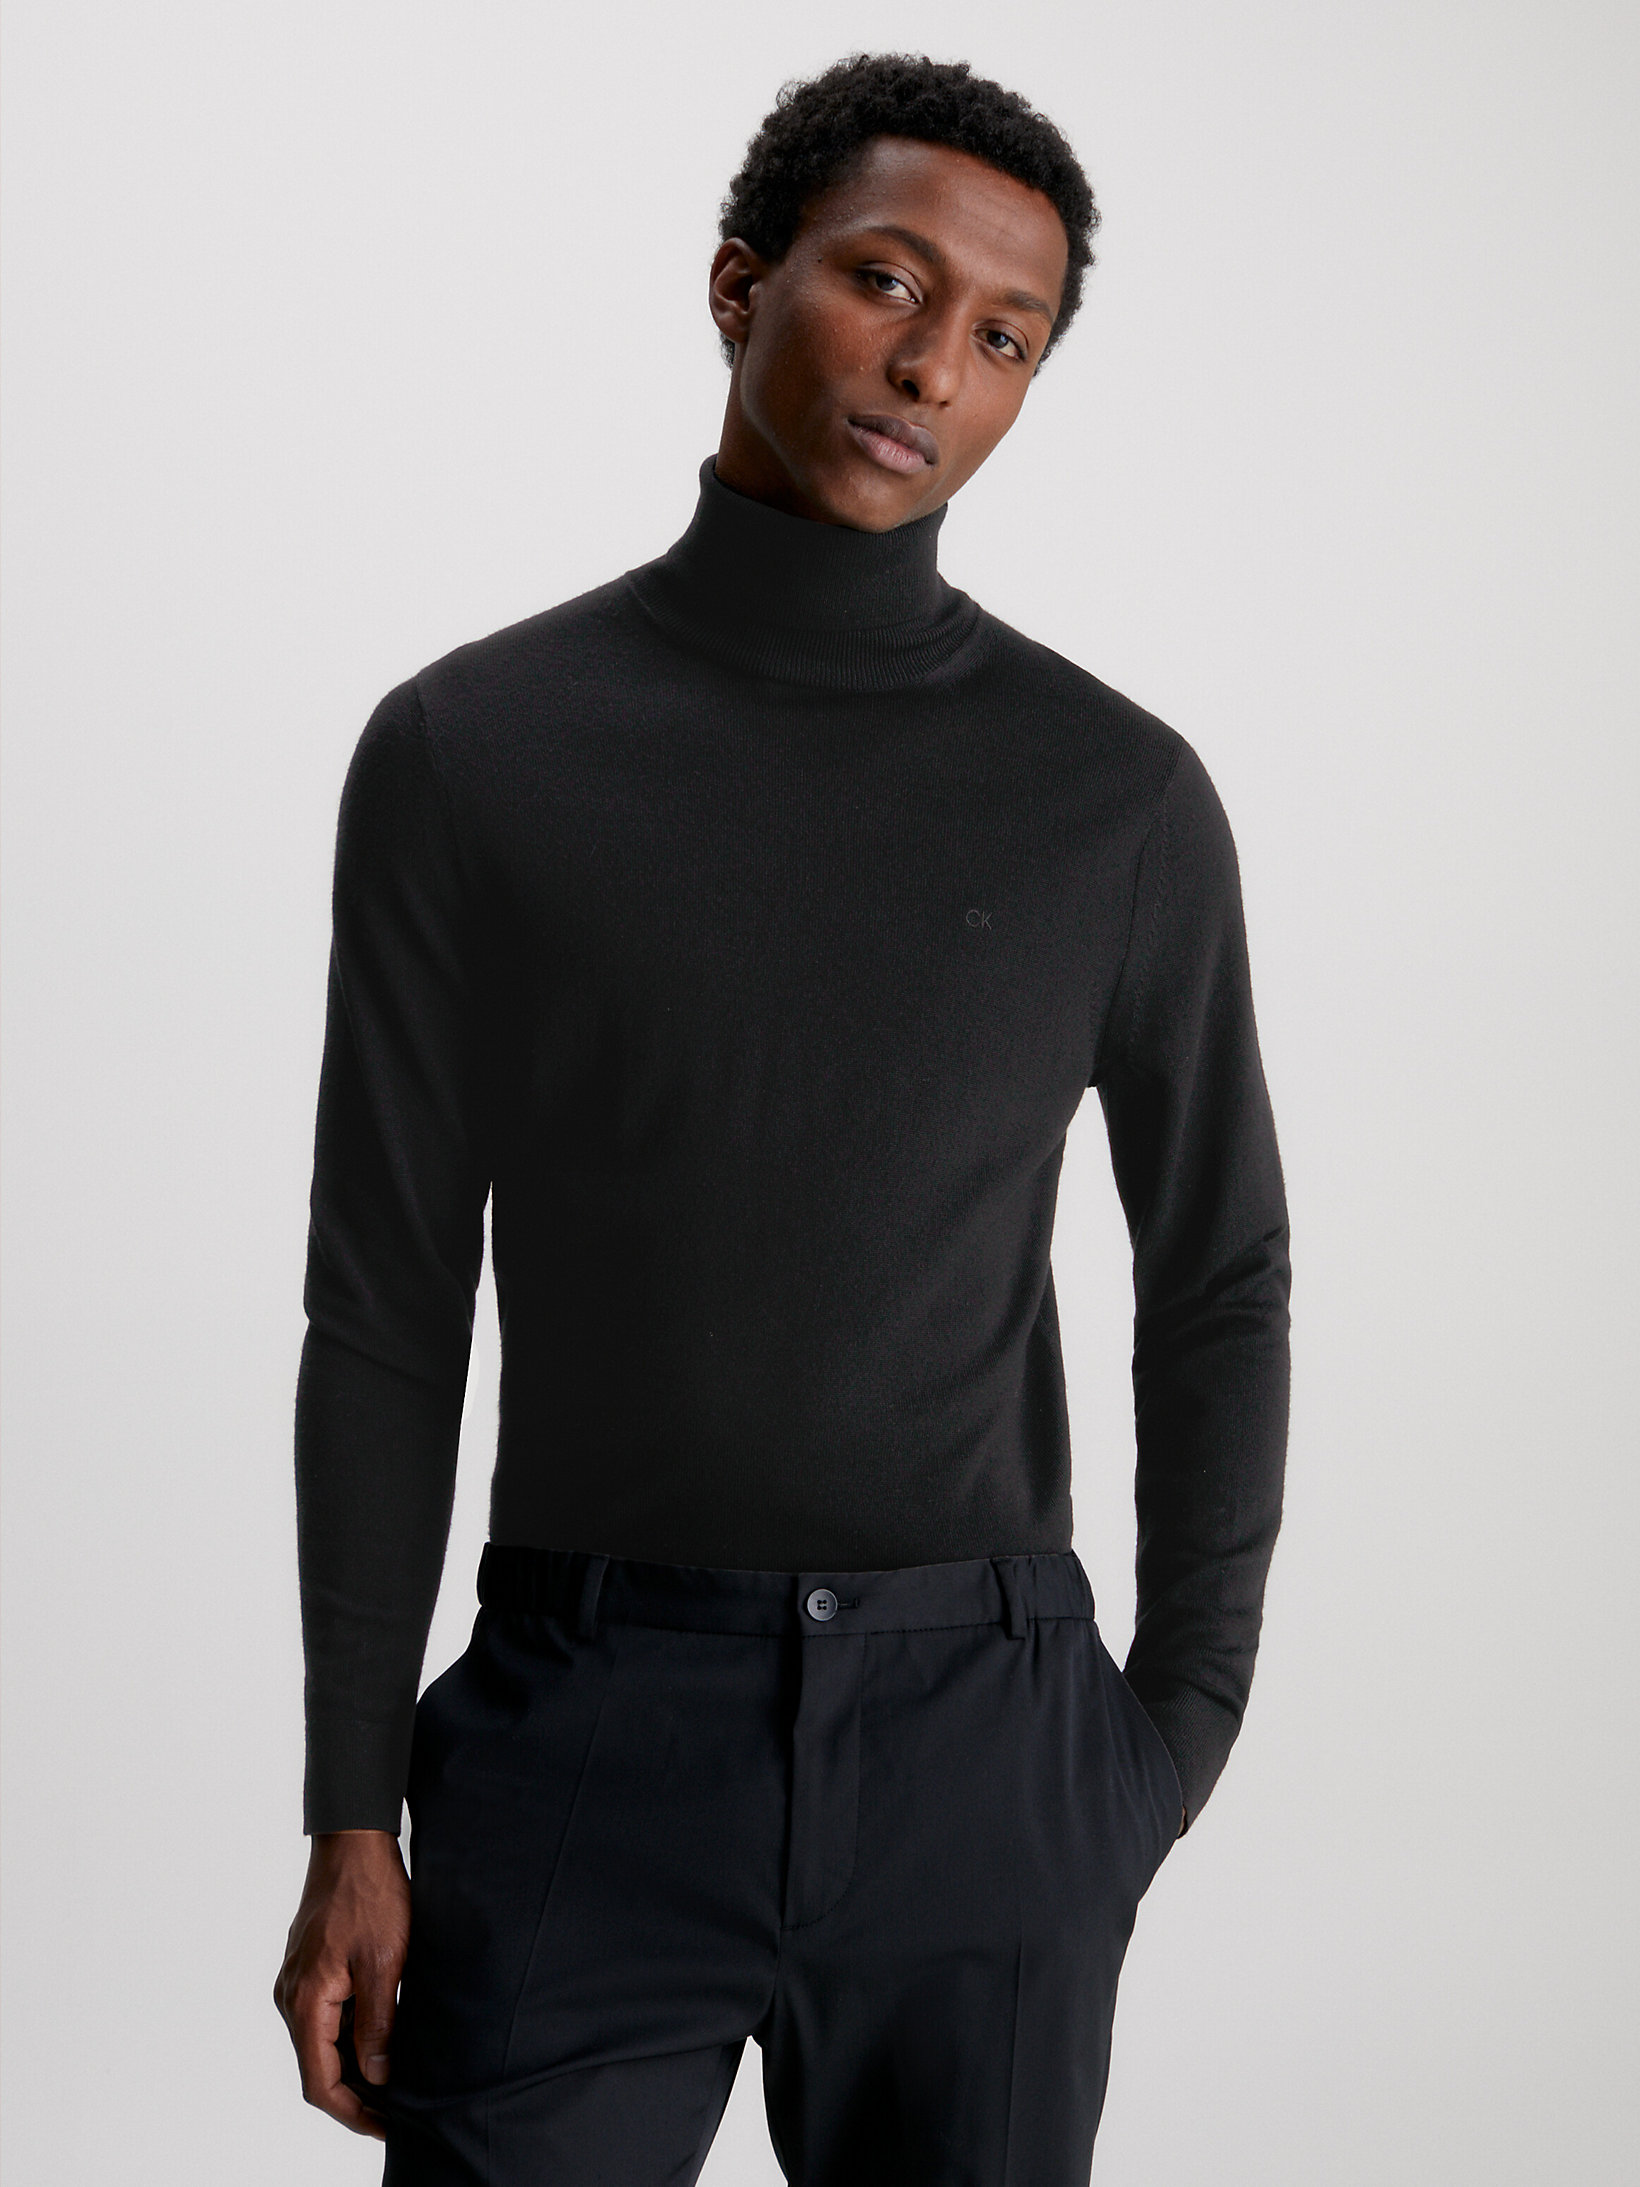 CK Black Merino Wool Roll Neck Jumper undefined men Calvin Klein